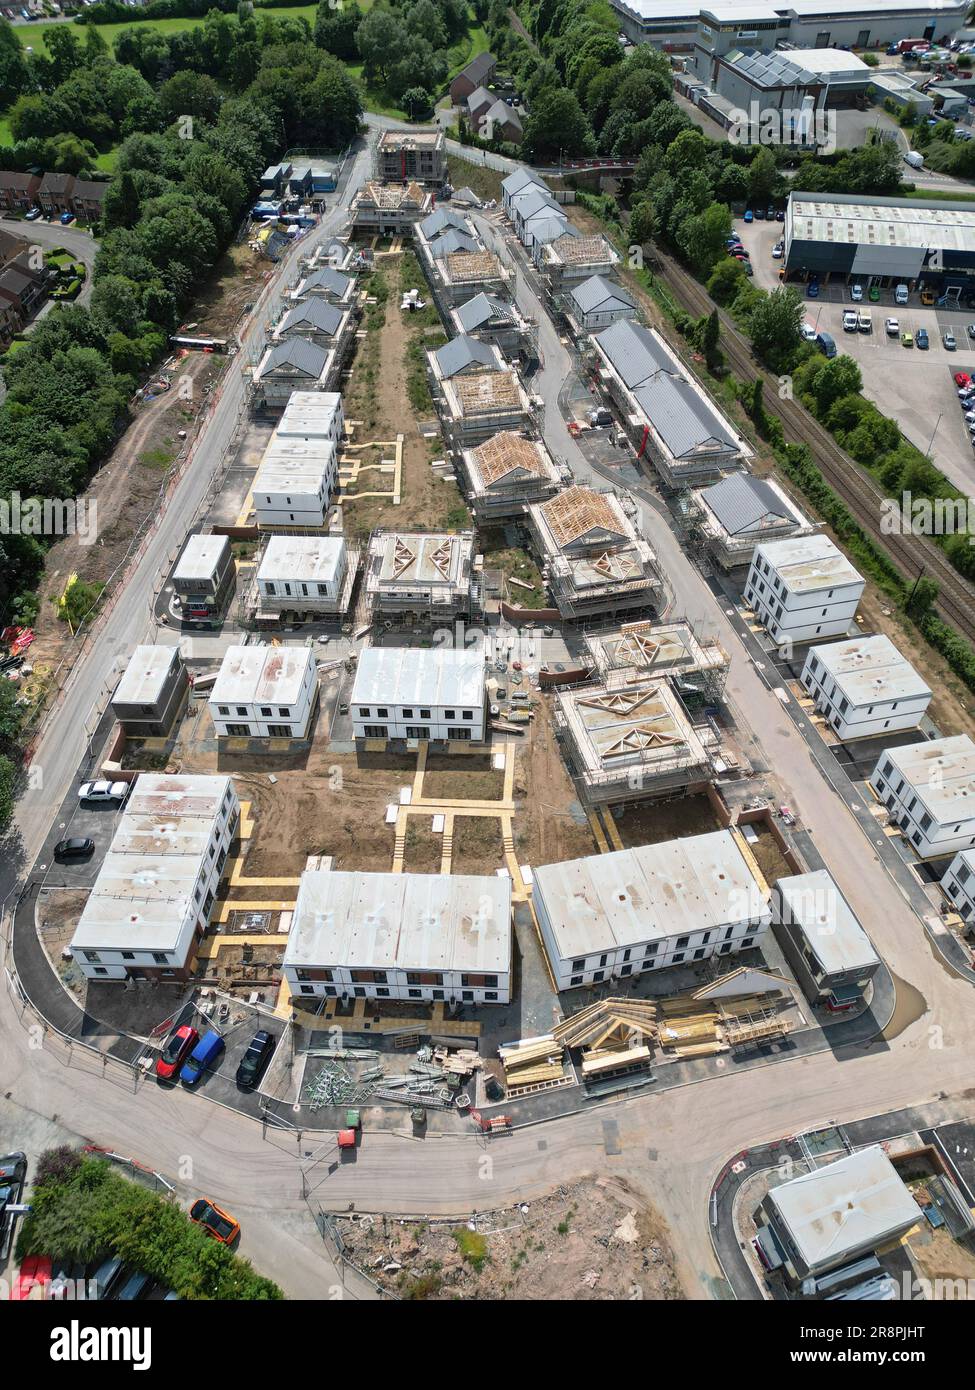 Hereford UK sito di costruzione di alloggi modulari di 120 case in affitto a prezzi accessibili e proprietà condivisa da Stonewater su un sito di sviluppo brownfield 23 giugno Foto Stock